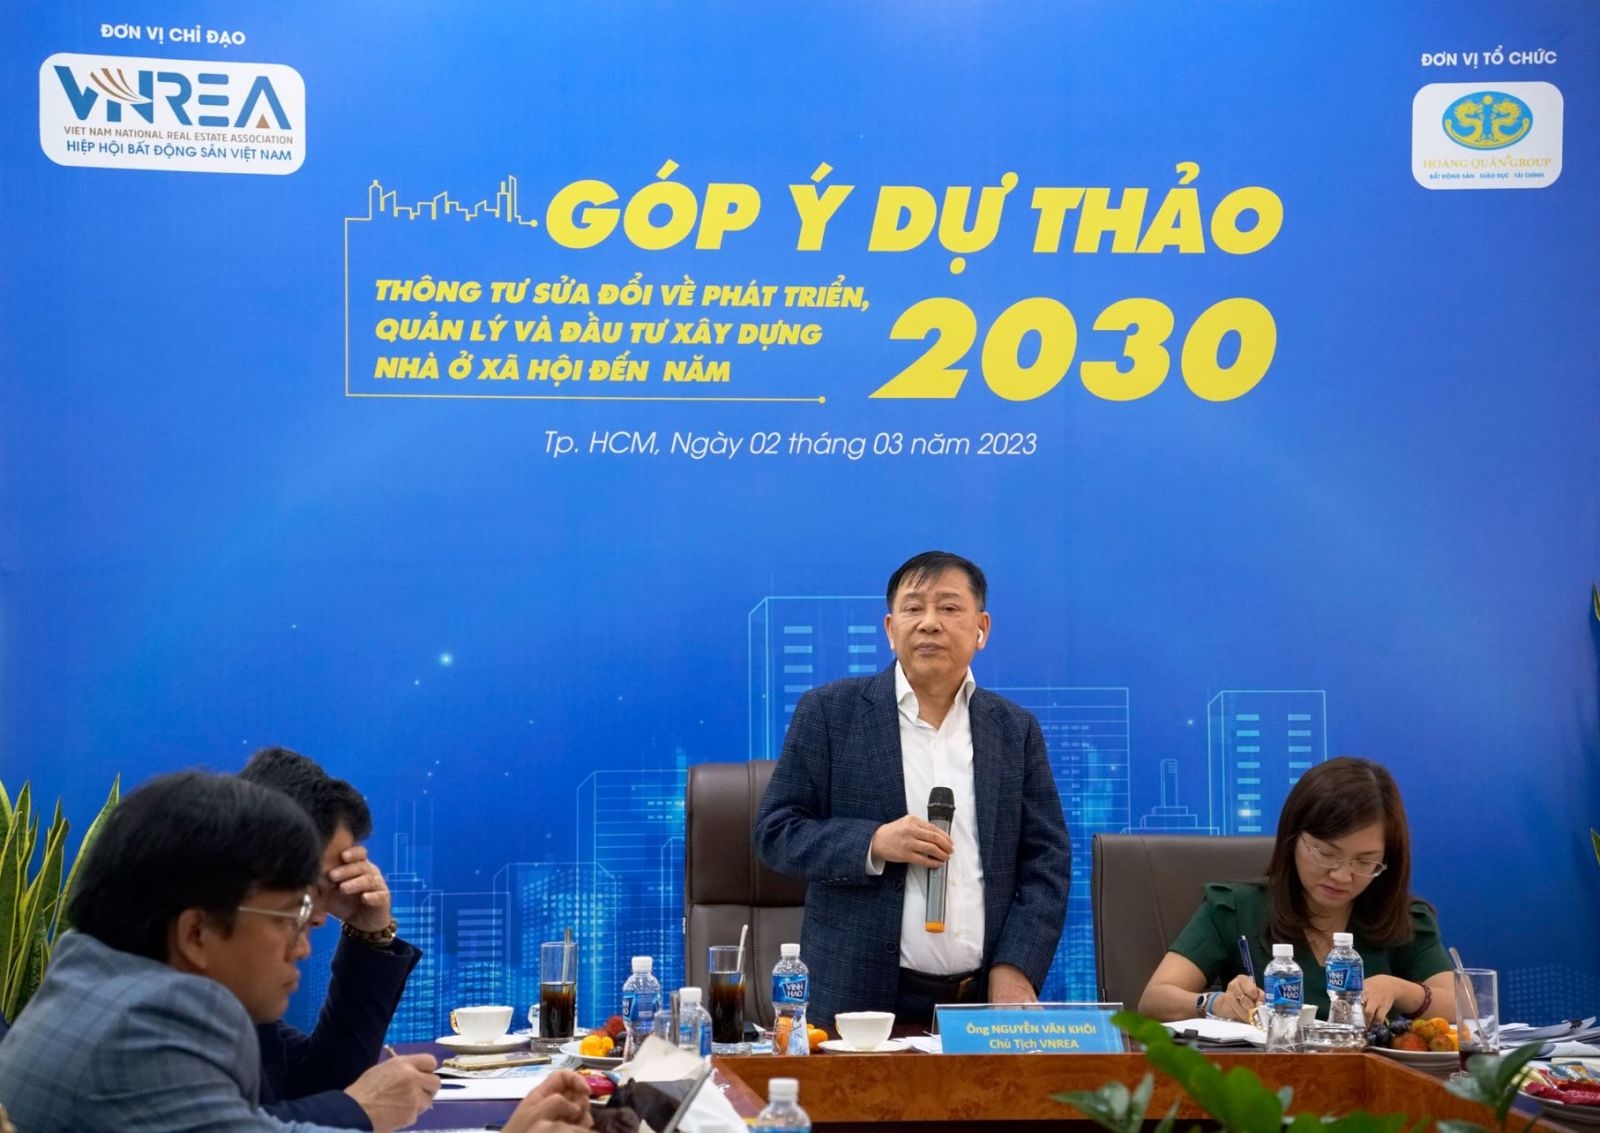 TS. Nguyễn Văn Khôi - Chủ tịch Hiệp hội Bất động sản Việt Nam phát biểu kết luận Hội nghị.